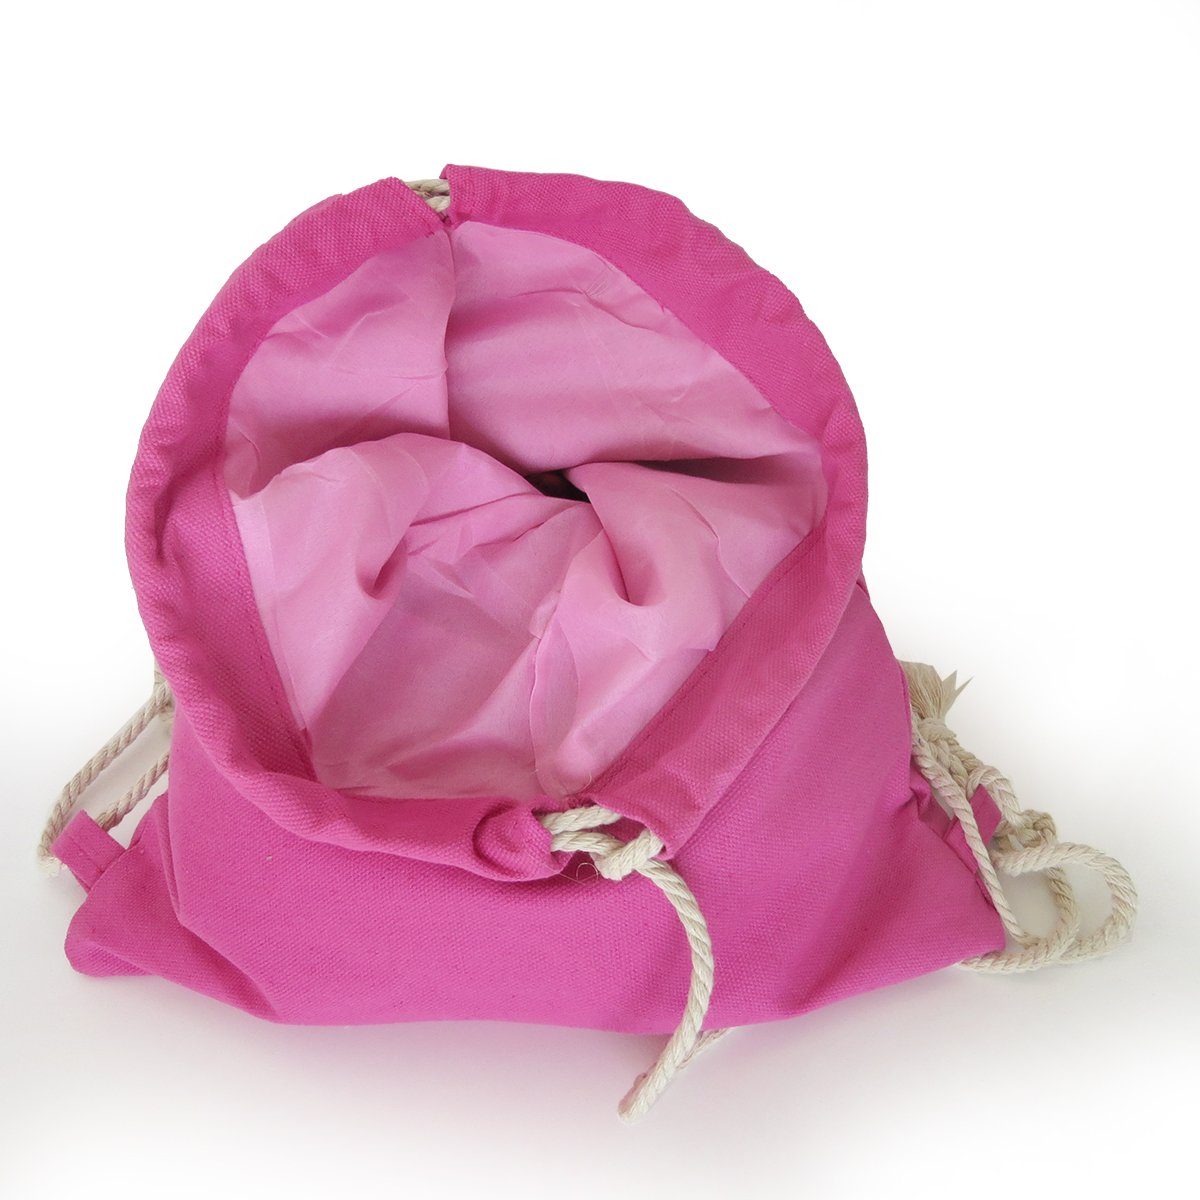 Sonia Originelli Umhängetasche Turnbeutel Patches abweichen pink Farben Makeup können Gymbag Lippen Aufnäher unifarben Baumwolle